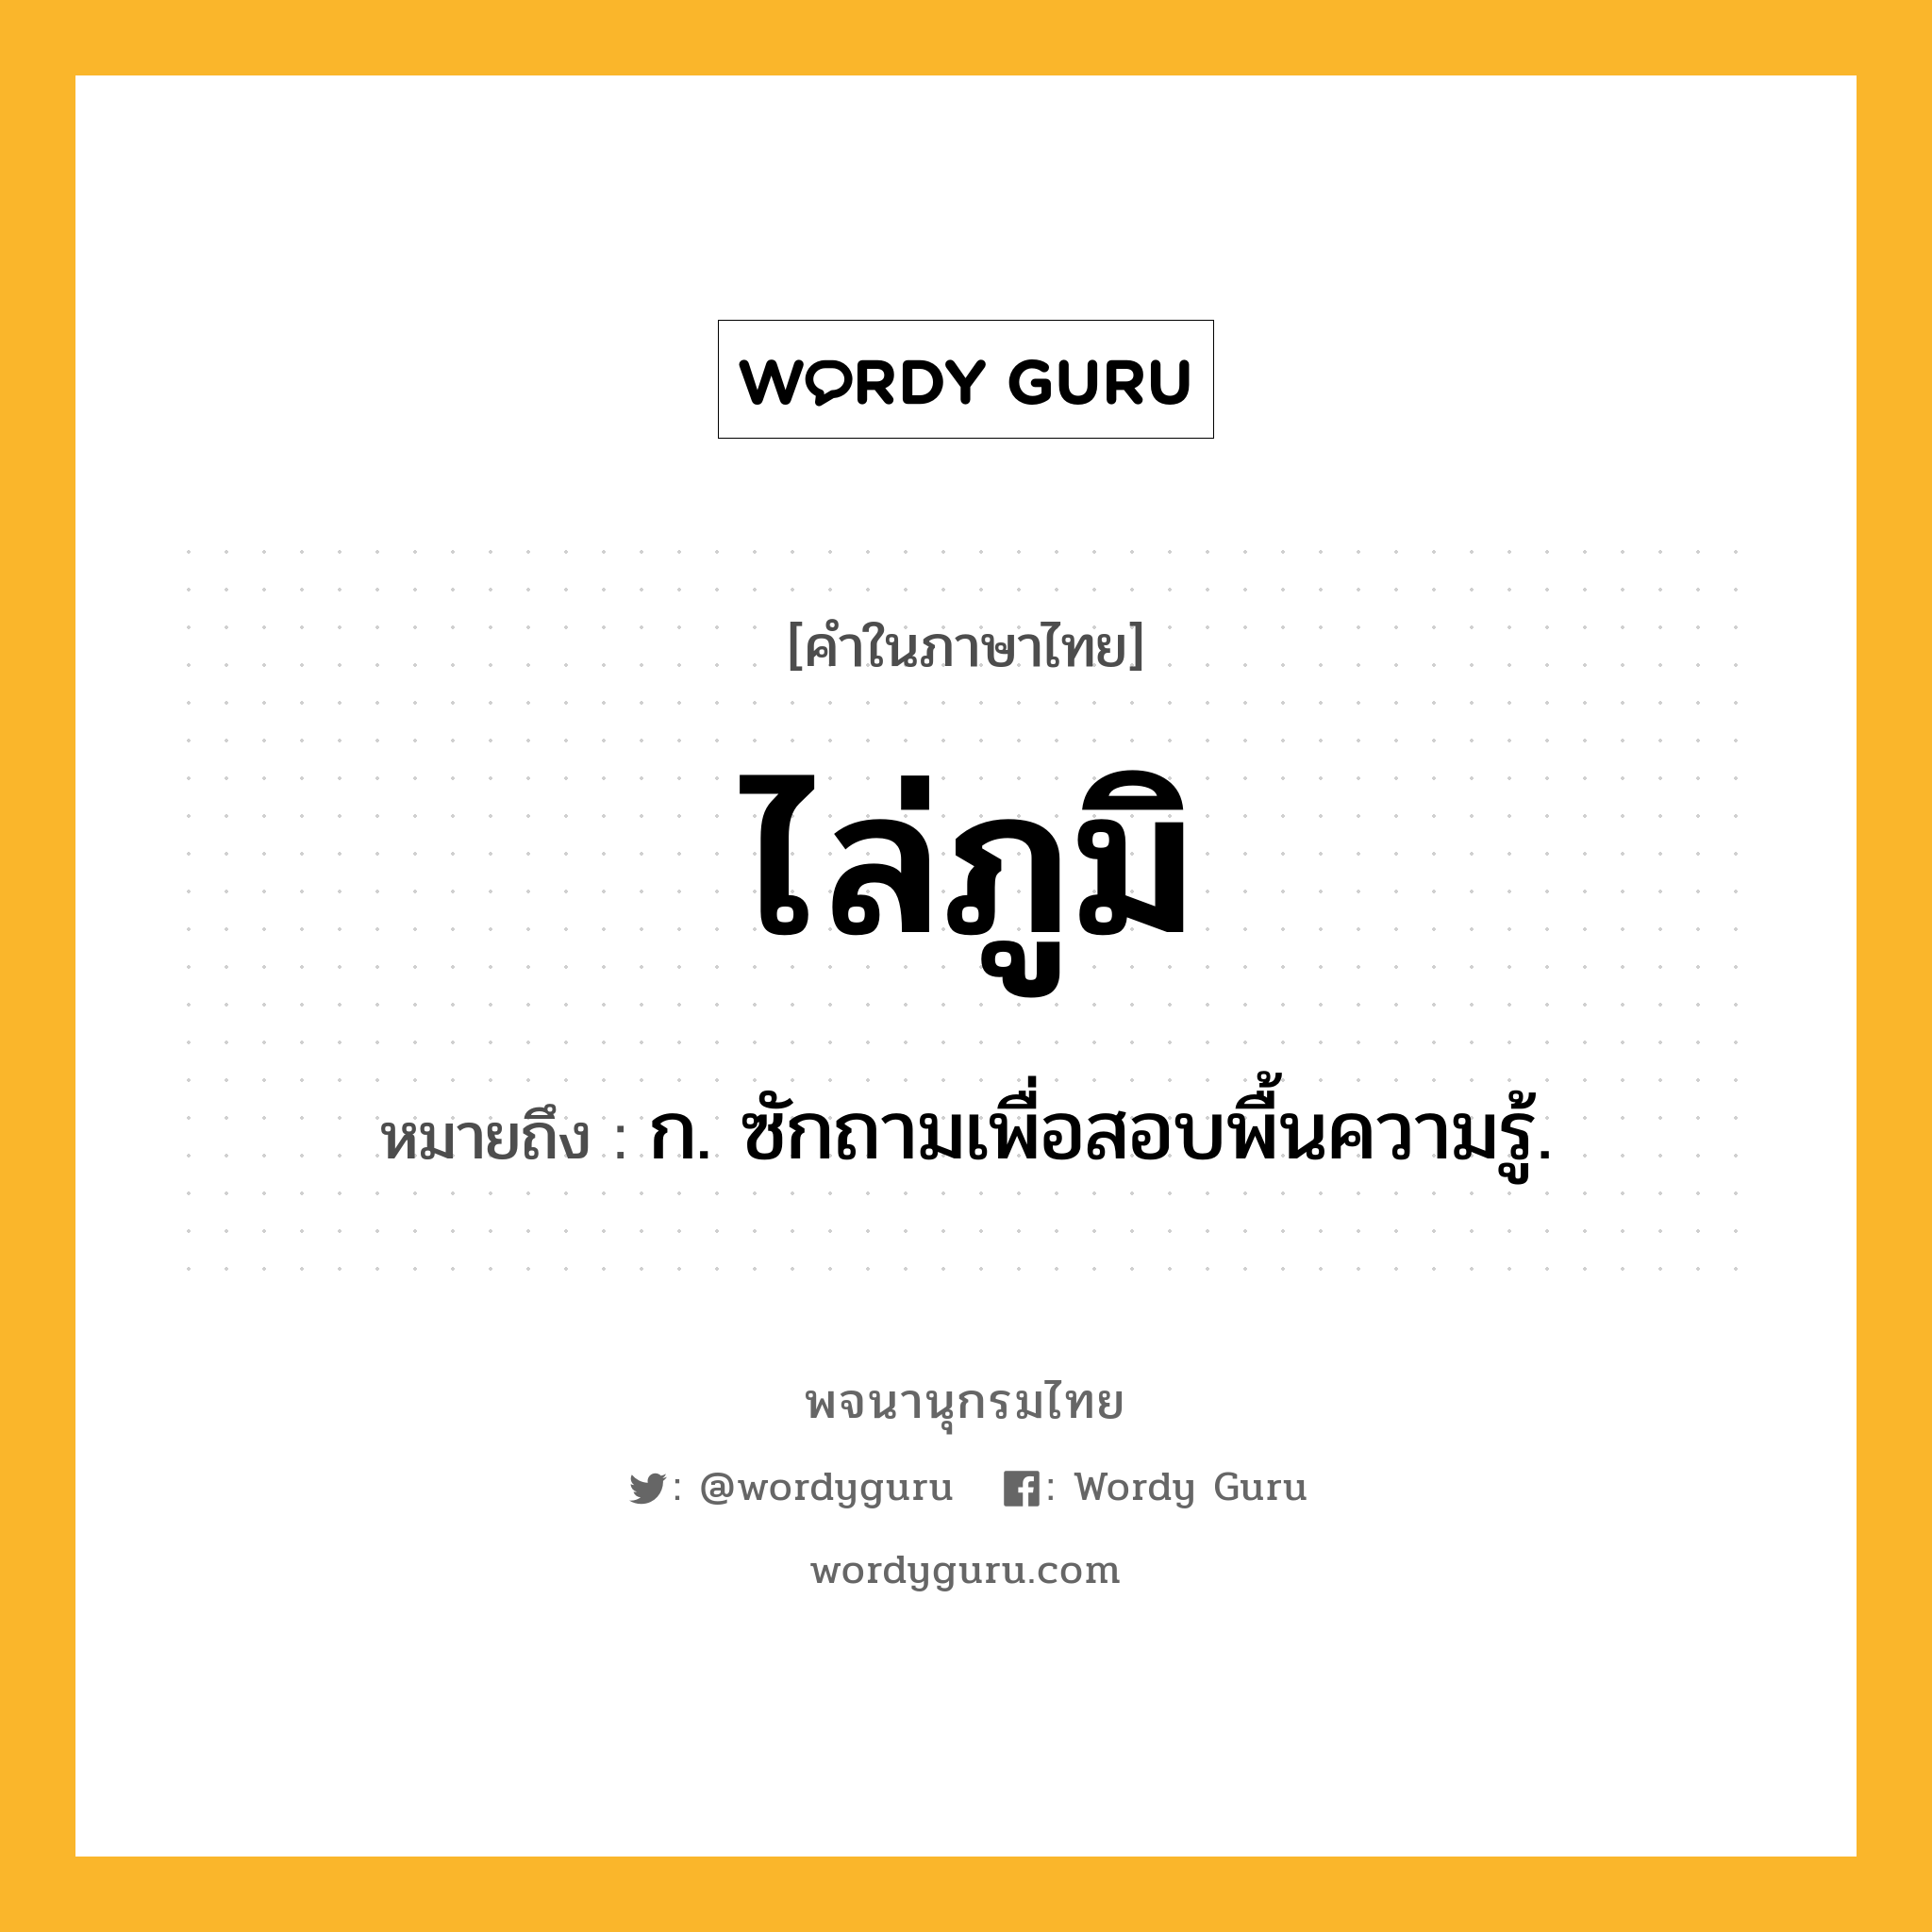 ไล่ภูมิ หมายถึงอะไร?, คำในภาษาไทย ไล่ภูมิ หมายถึง ก. ซักถามเพื่อสอบพื้นความรู้.